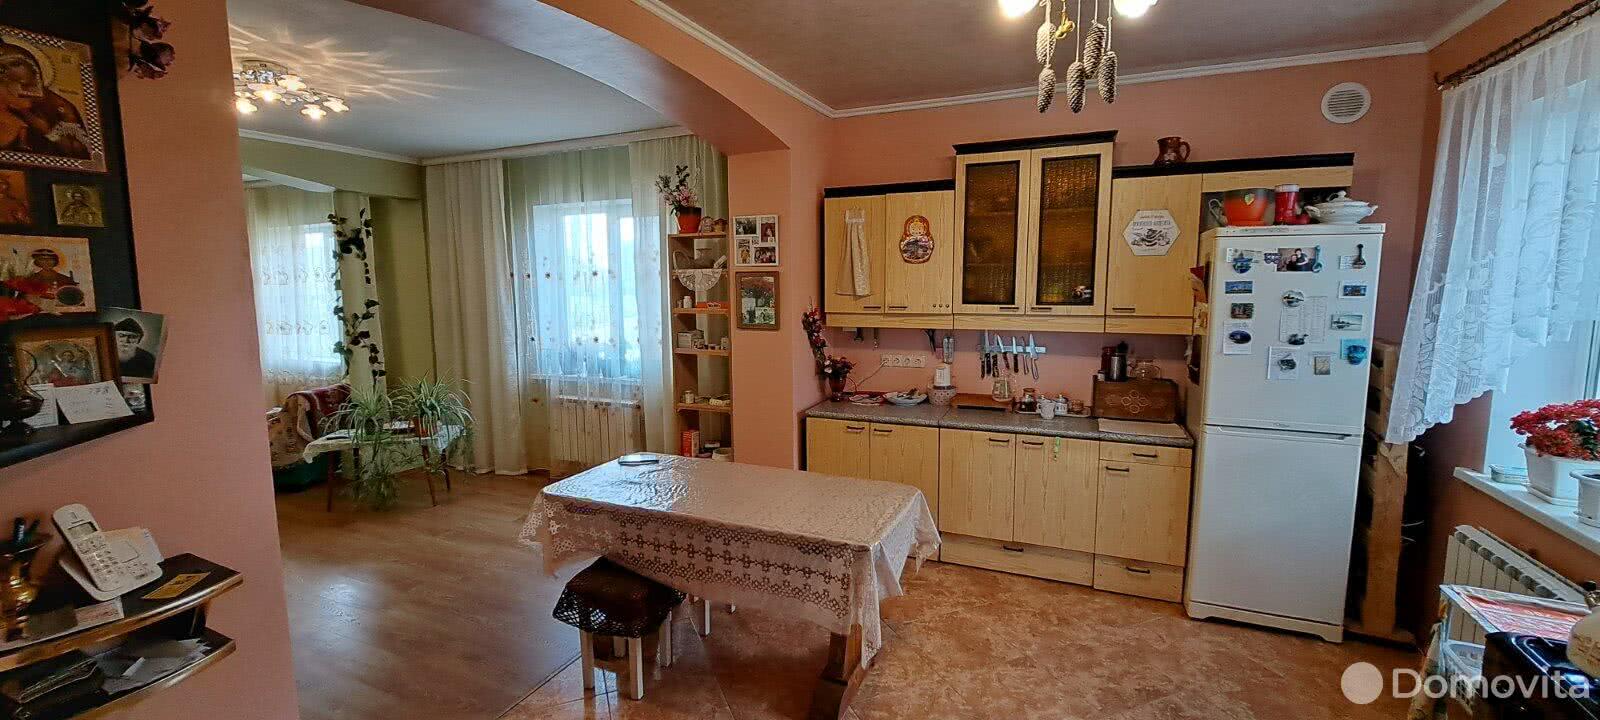 Продажа 2-этажного дома в Зазерке, Минская область ул. Новая, 99800USD, код 636202 - фото 6